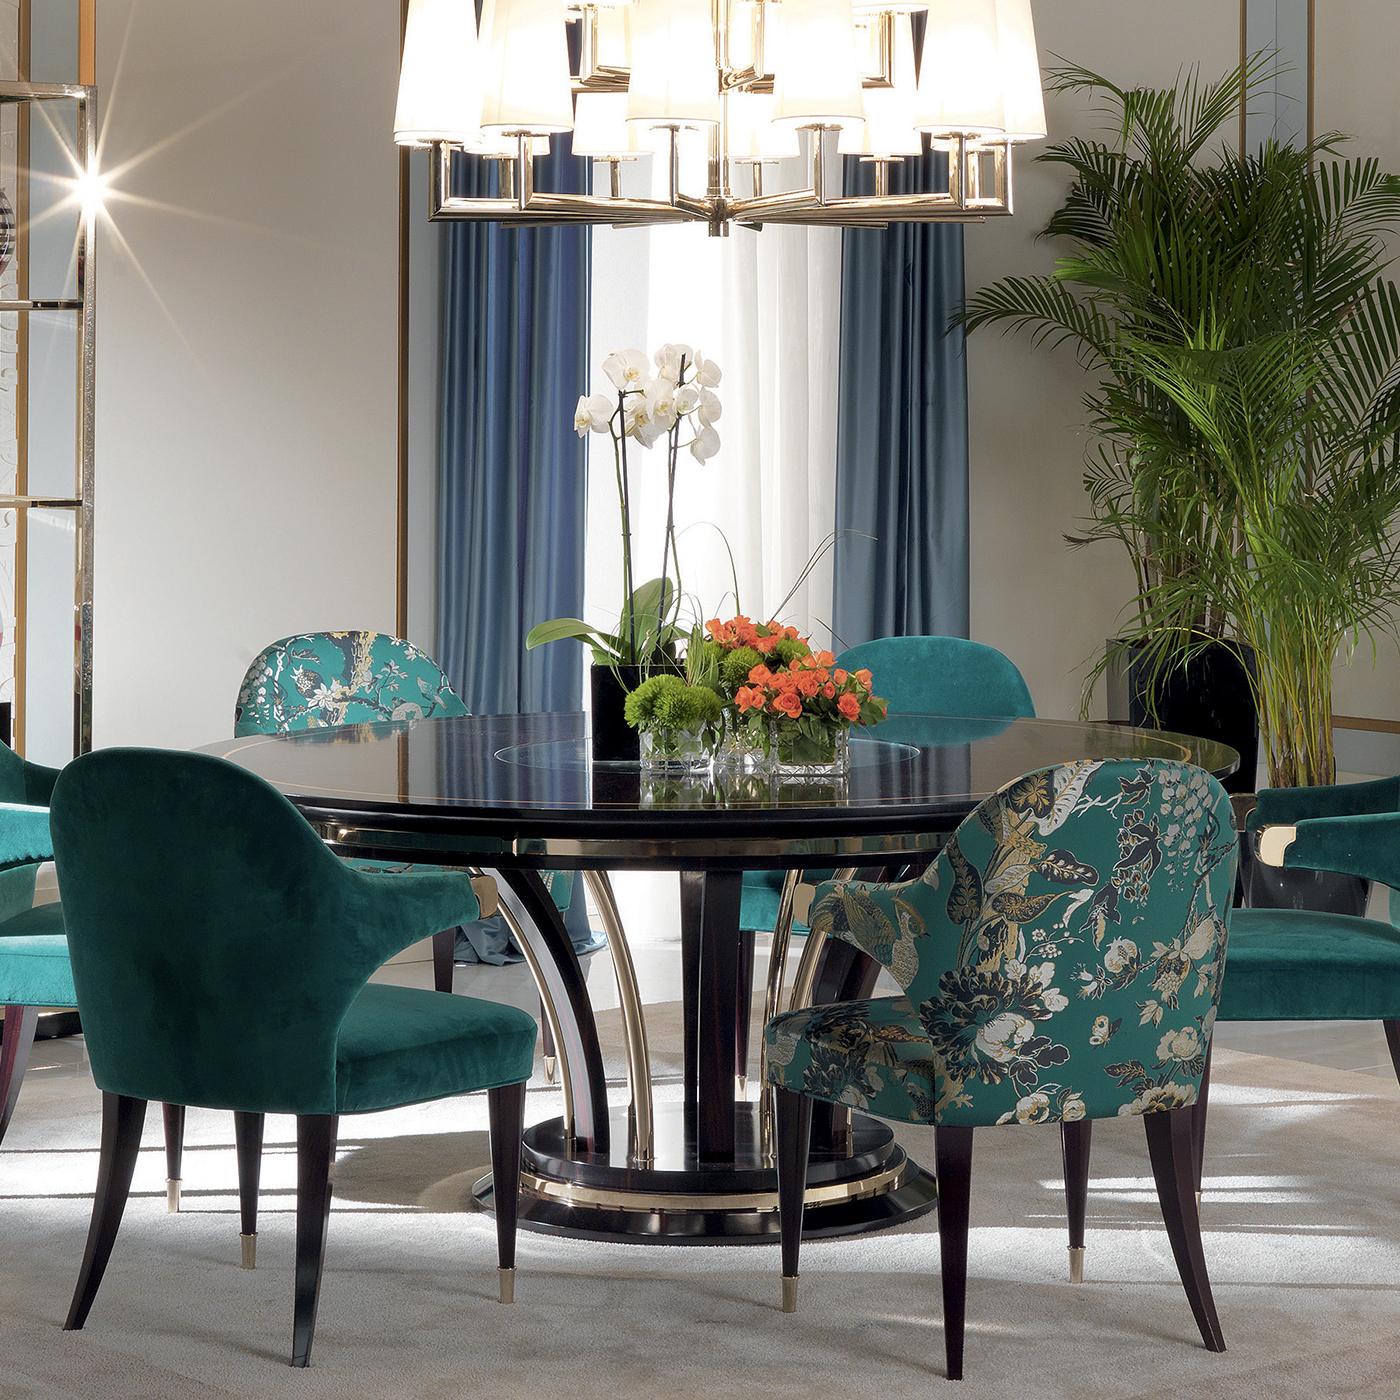 Faisant partie d'une série de superbes meubles en ébène, cette table à manger ronde est un ajout magnifique à une maison classique. La combinaison de matériaux nobles et d'une fabrication impeccable en fait un superbe objet qui attirera tous les